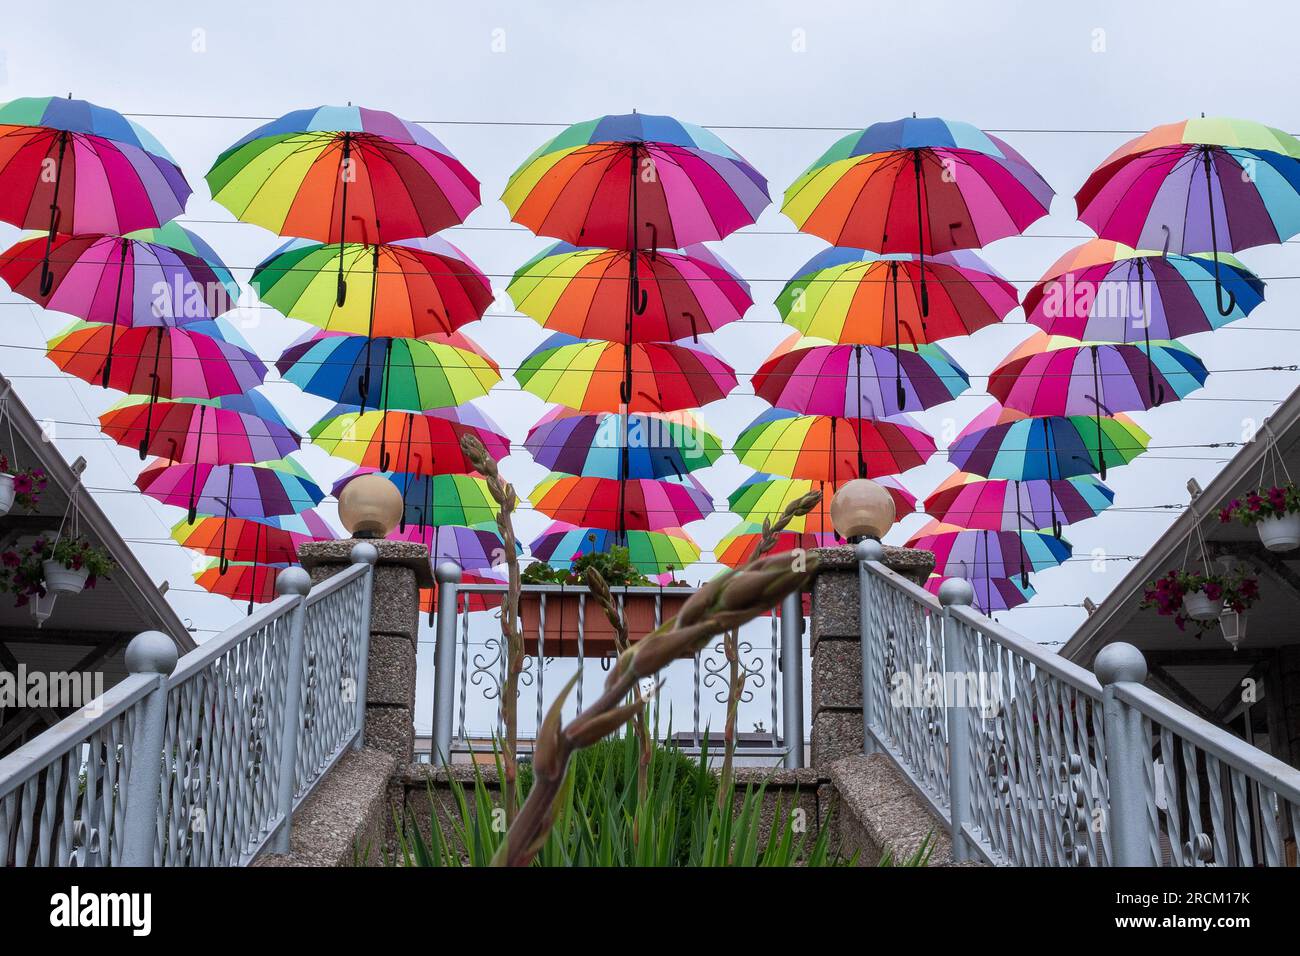 Beaucoup de parapluies de couleur arc-en-ciel contre le ciel Banque D'Images